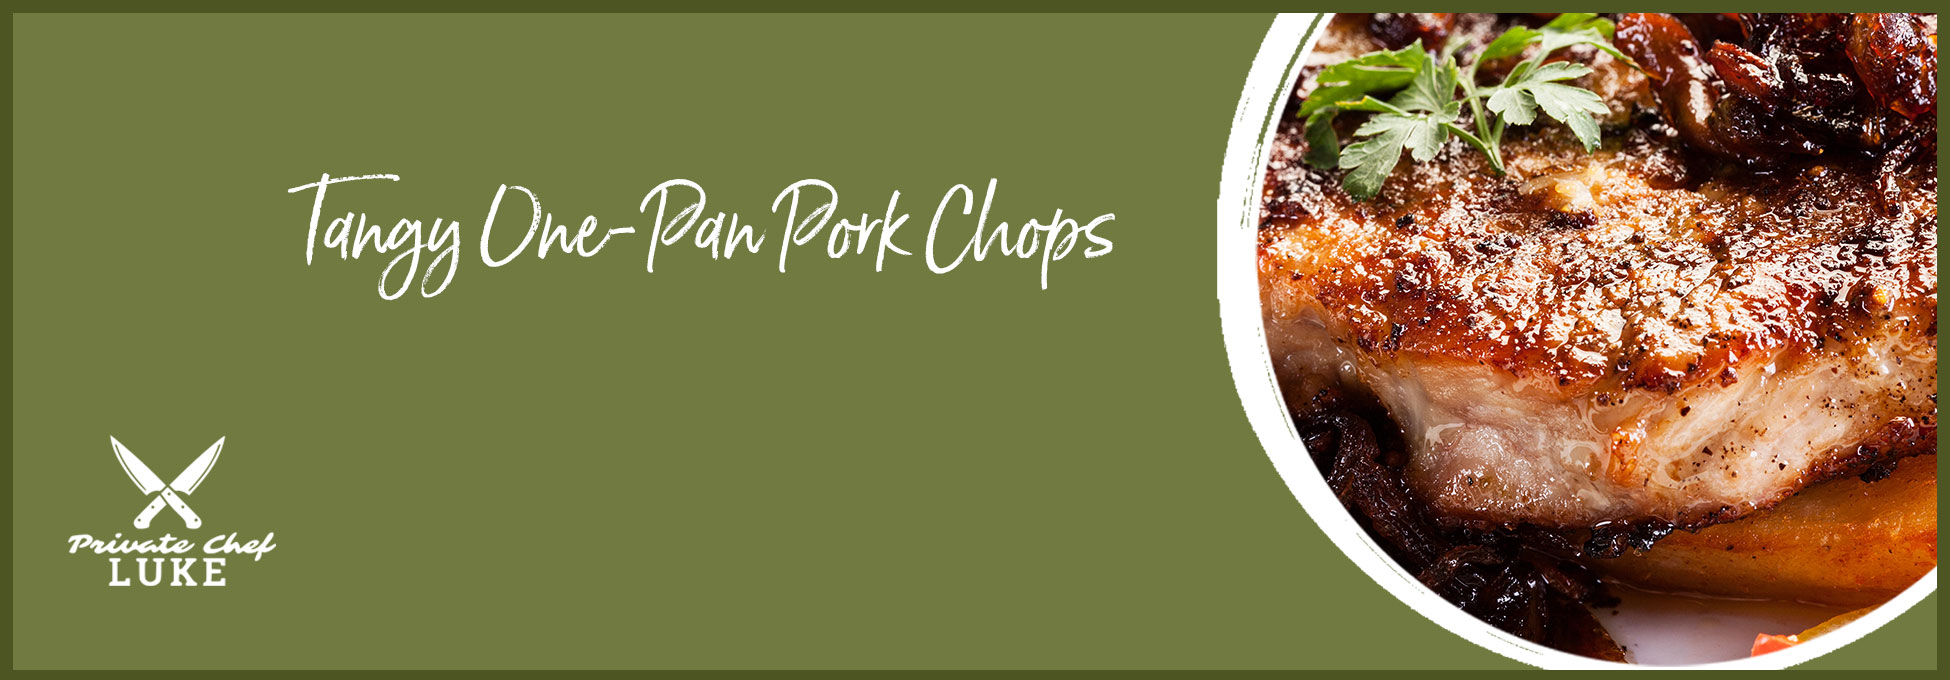 trigs-homepg-banner-1950x680-chefluke-Tangy-One-Pan-Pork-Chops.jpg